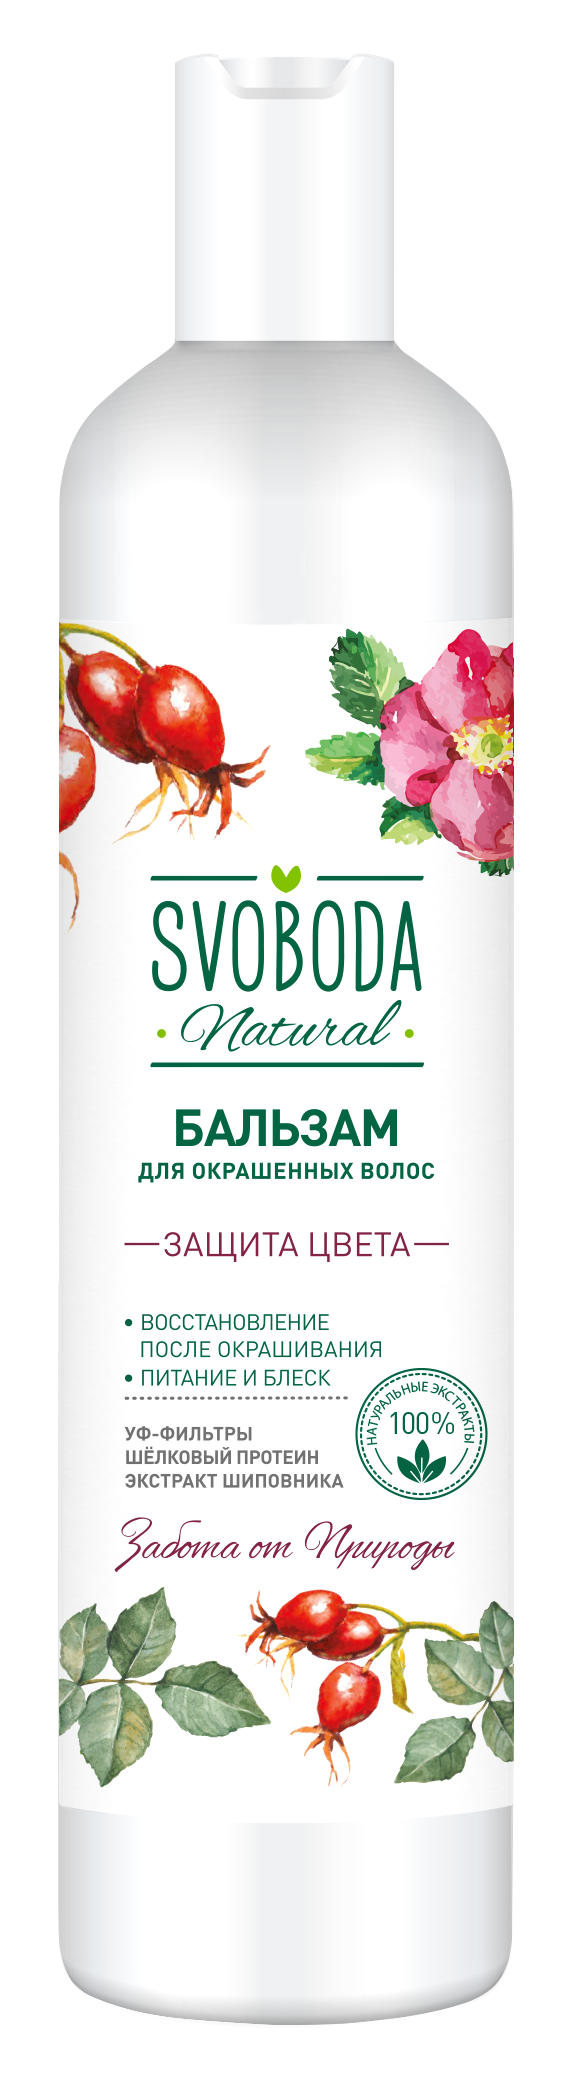 Бальзам-ополаскиватель Svoboda Natural Защита цвета для окрашенных волос 430 мл body boom био бальзам для волос ультра забота matcha